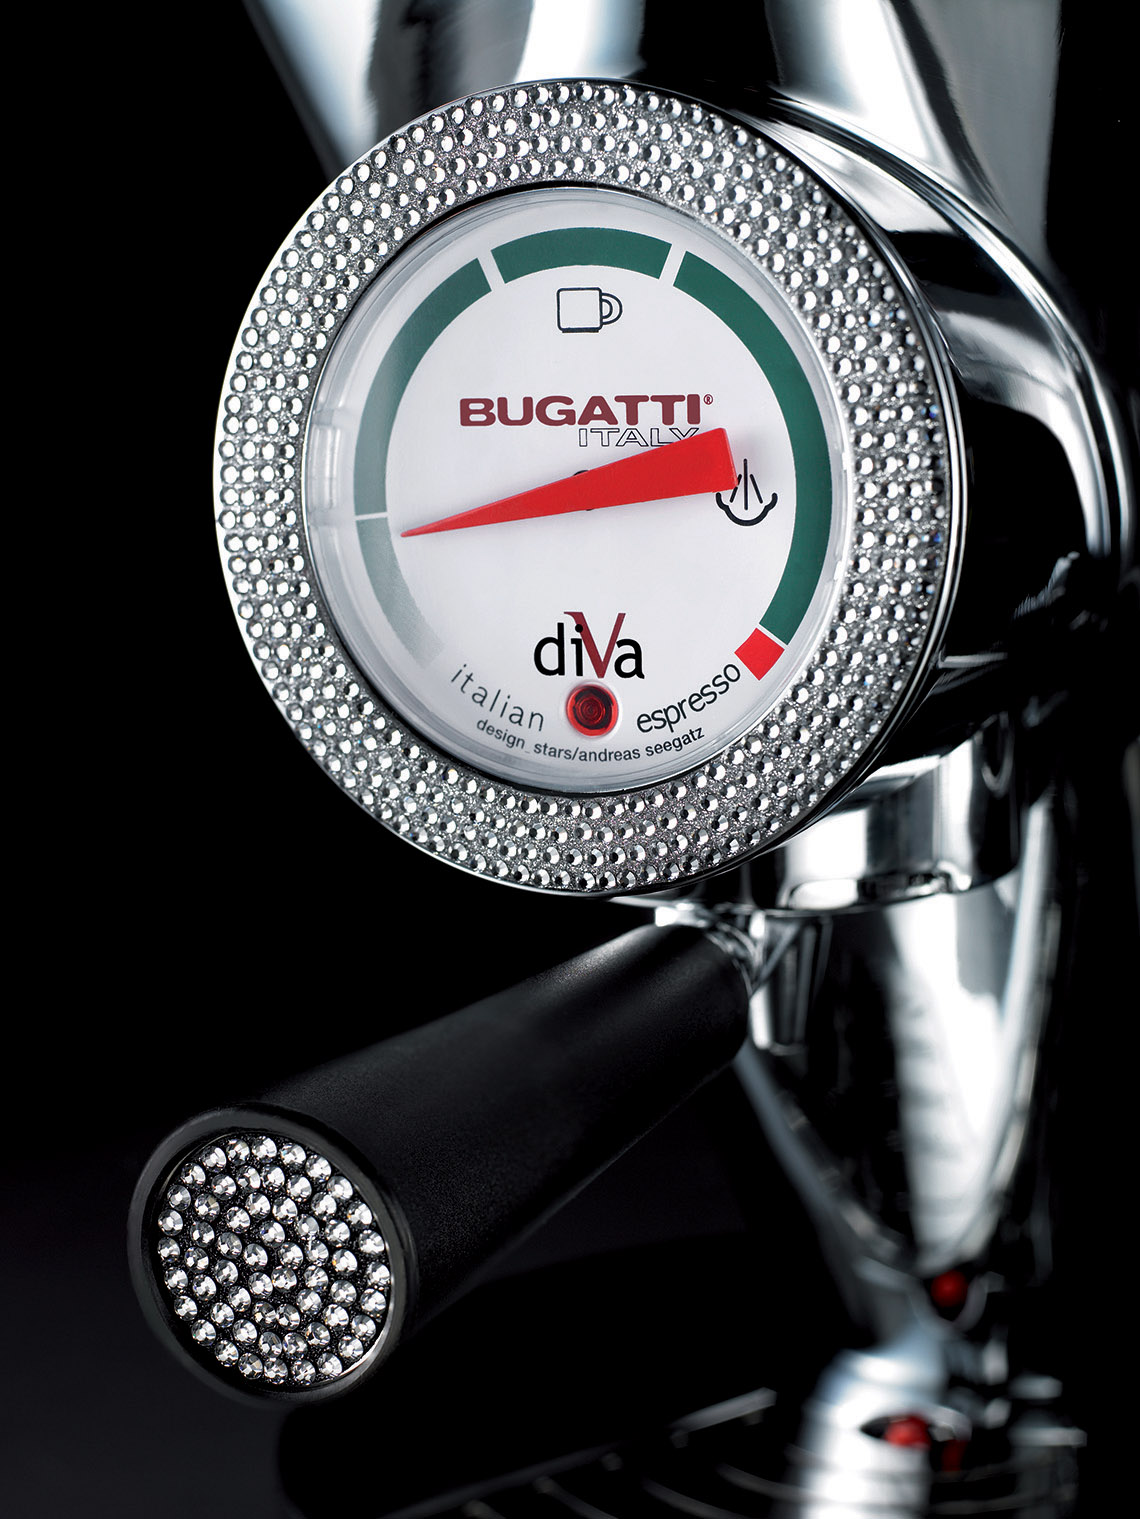 Genialnie prosta w obsłudze Diva, ekspres do kawy Bugatti, jest też przepiękna